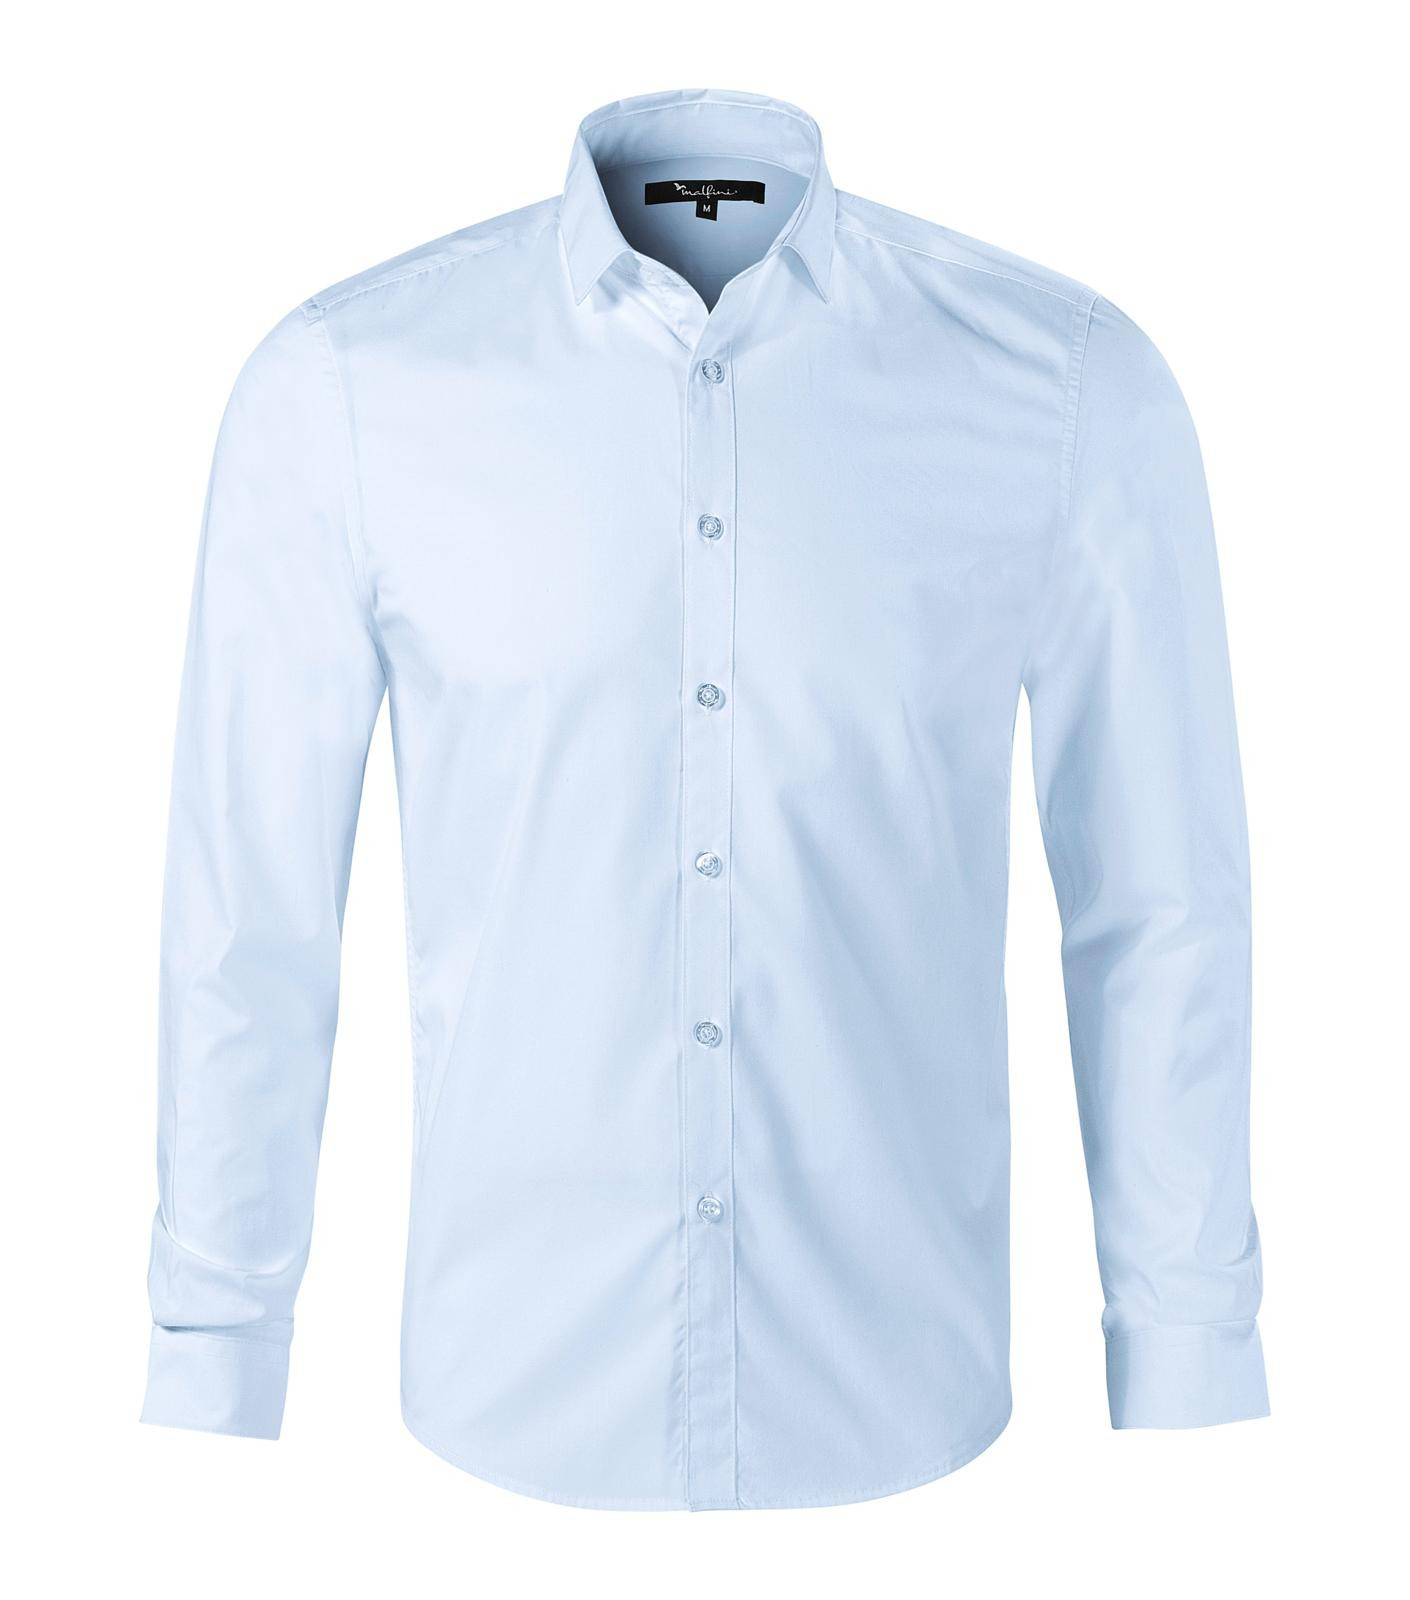 Dámska košeľa s dlhým rukávom Malfini Premium Dynamic 263 - veľkosť: XL, farba: light blue